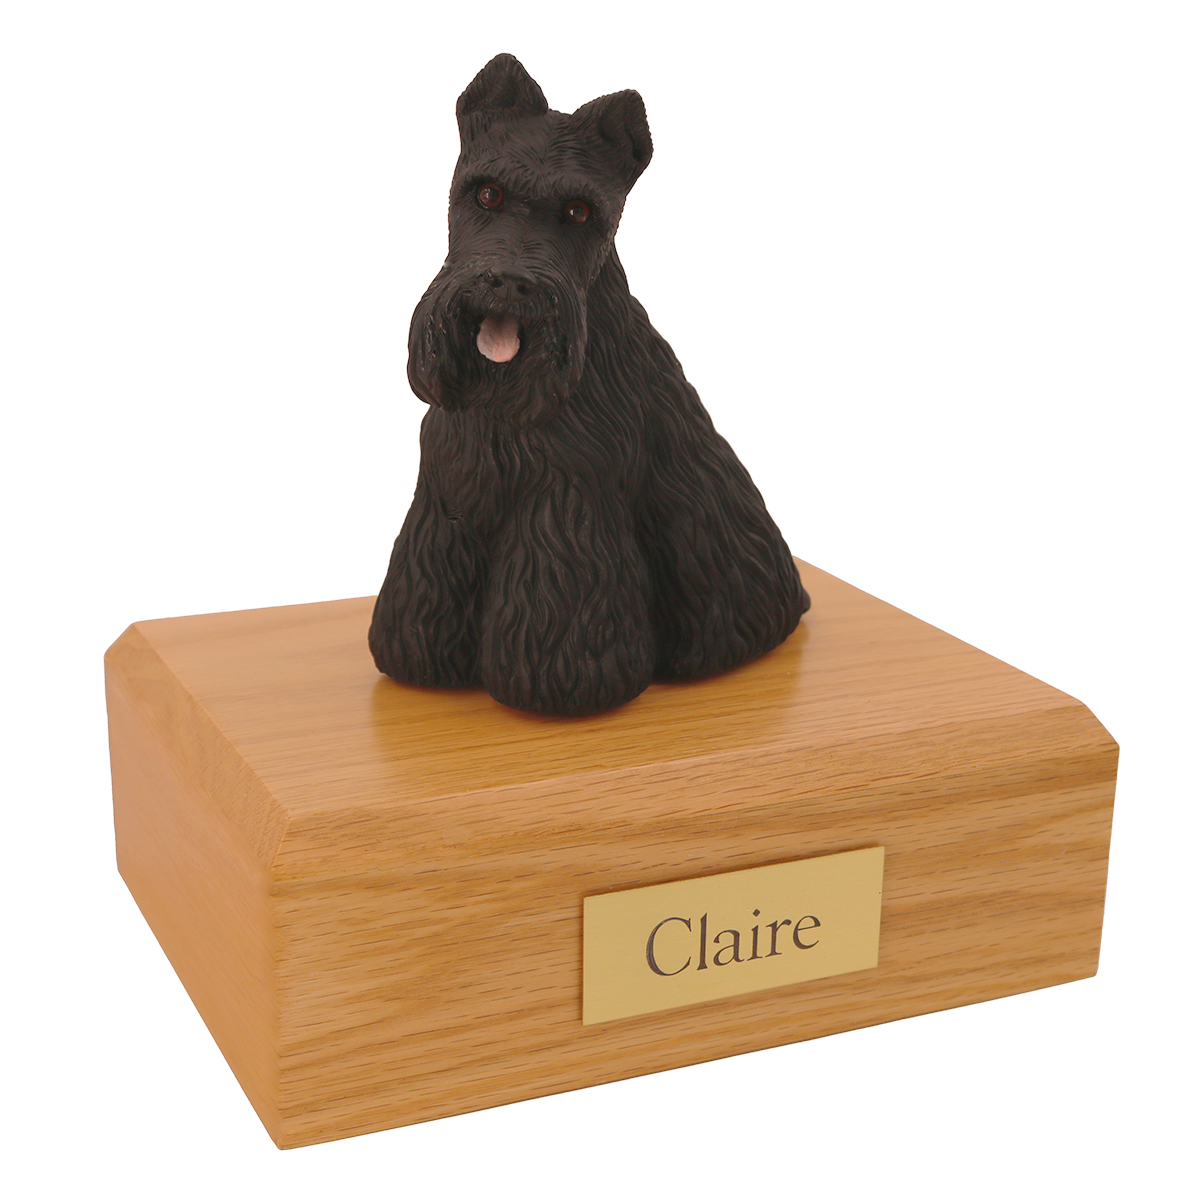 Dog, Scottish Terrier - Figurine Urn